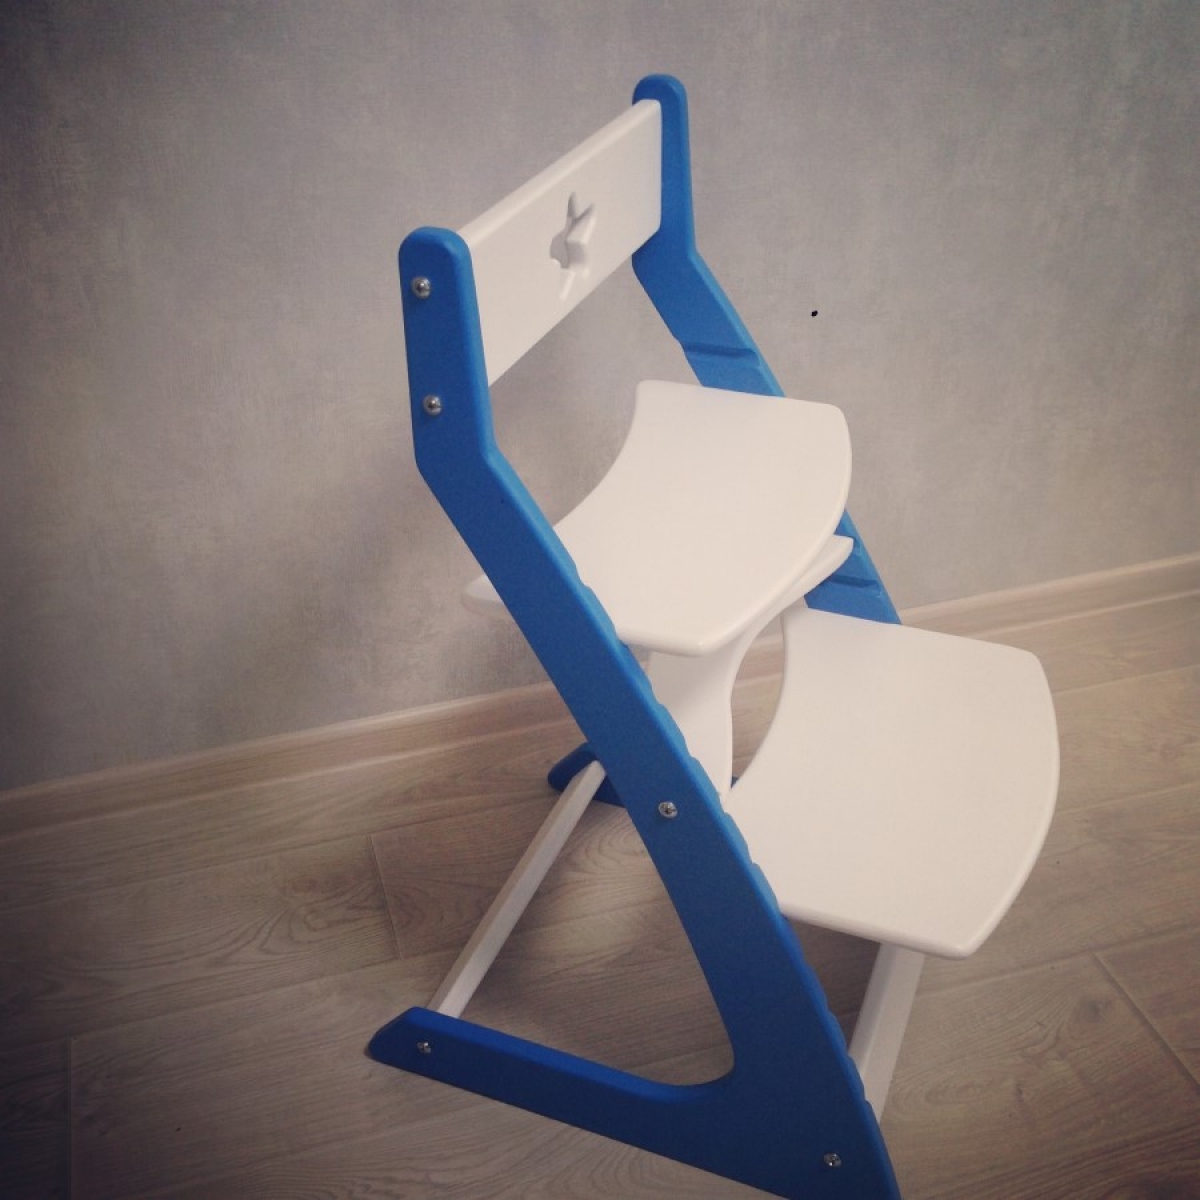 Детский растущий регулируемый стул Ростик/Rostik (бело-синий)